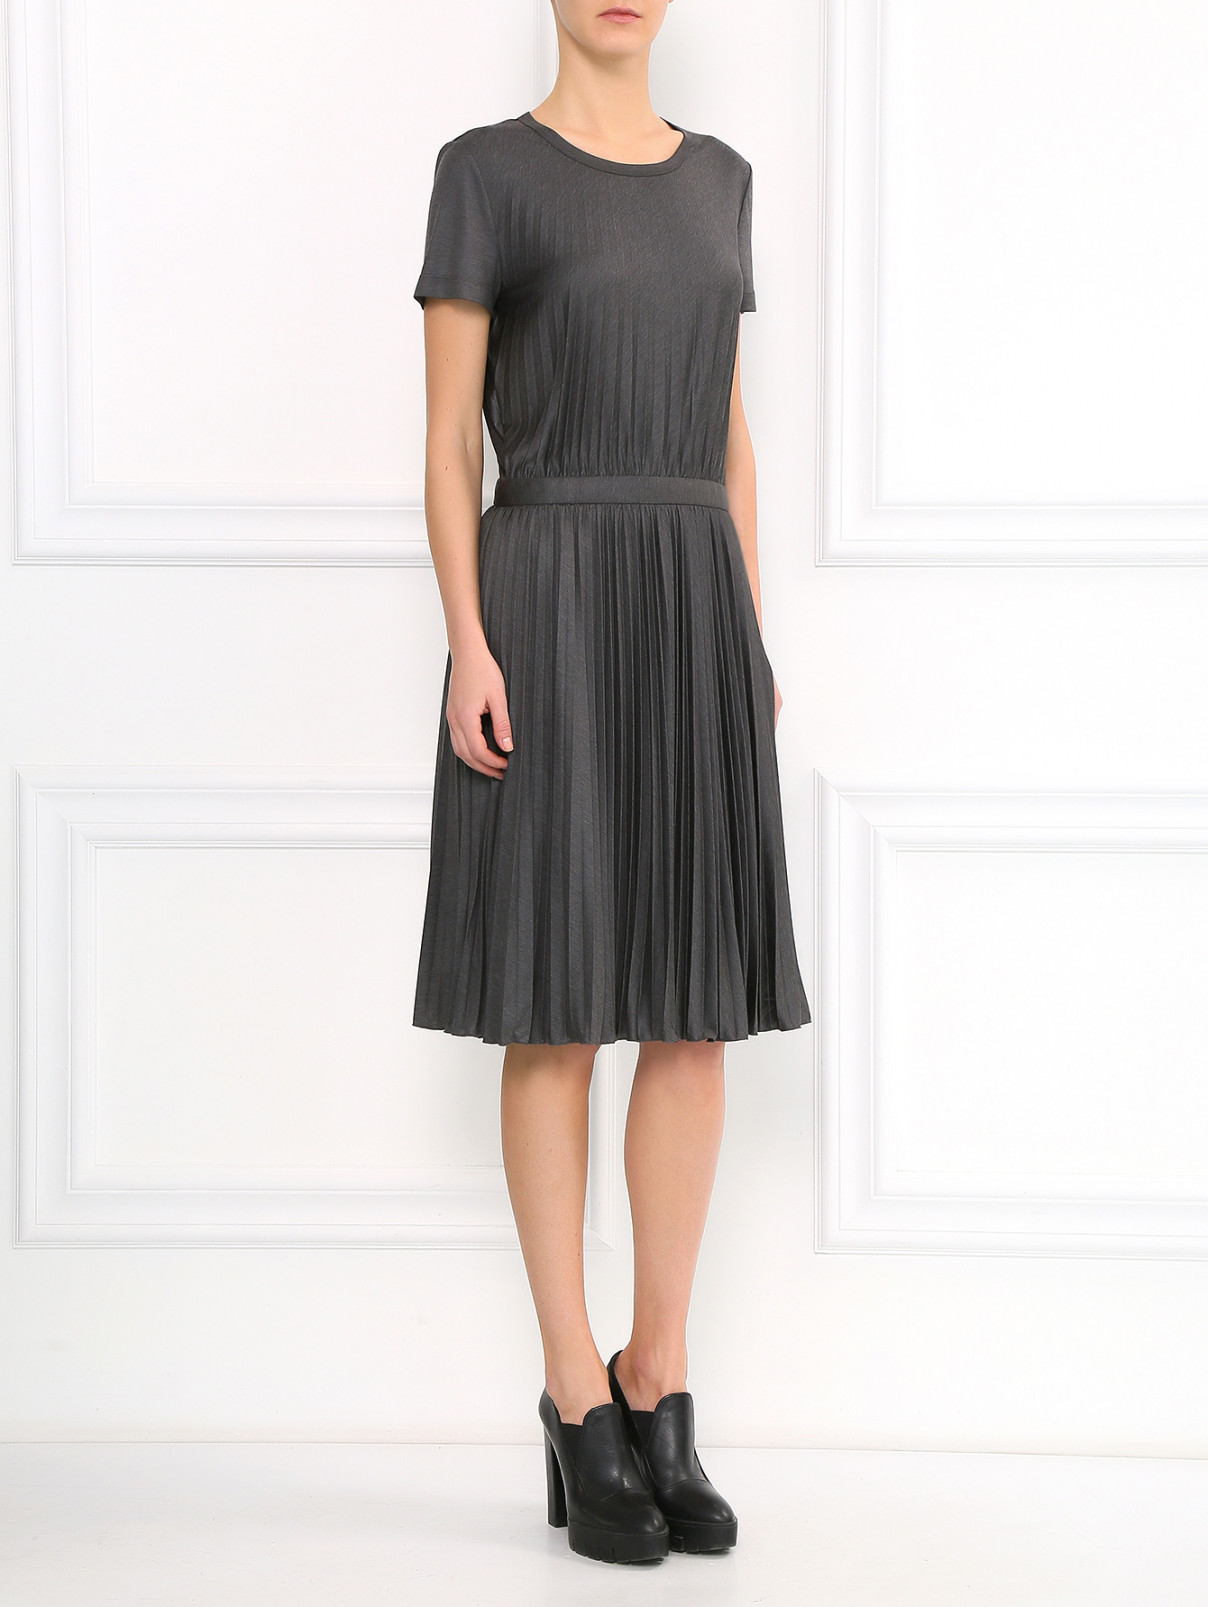 Плиссированное платье Moschino Cheap&Chic  –  Модель Общий вид  – Цвет:  Серый